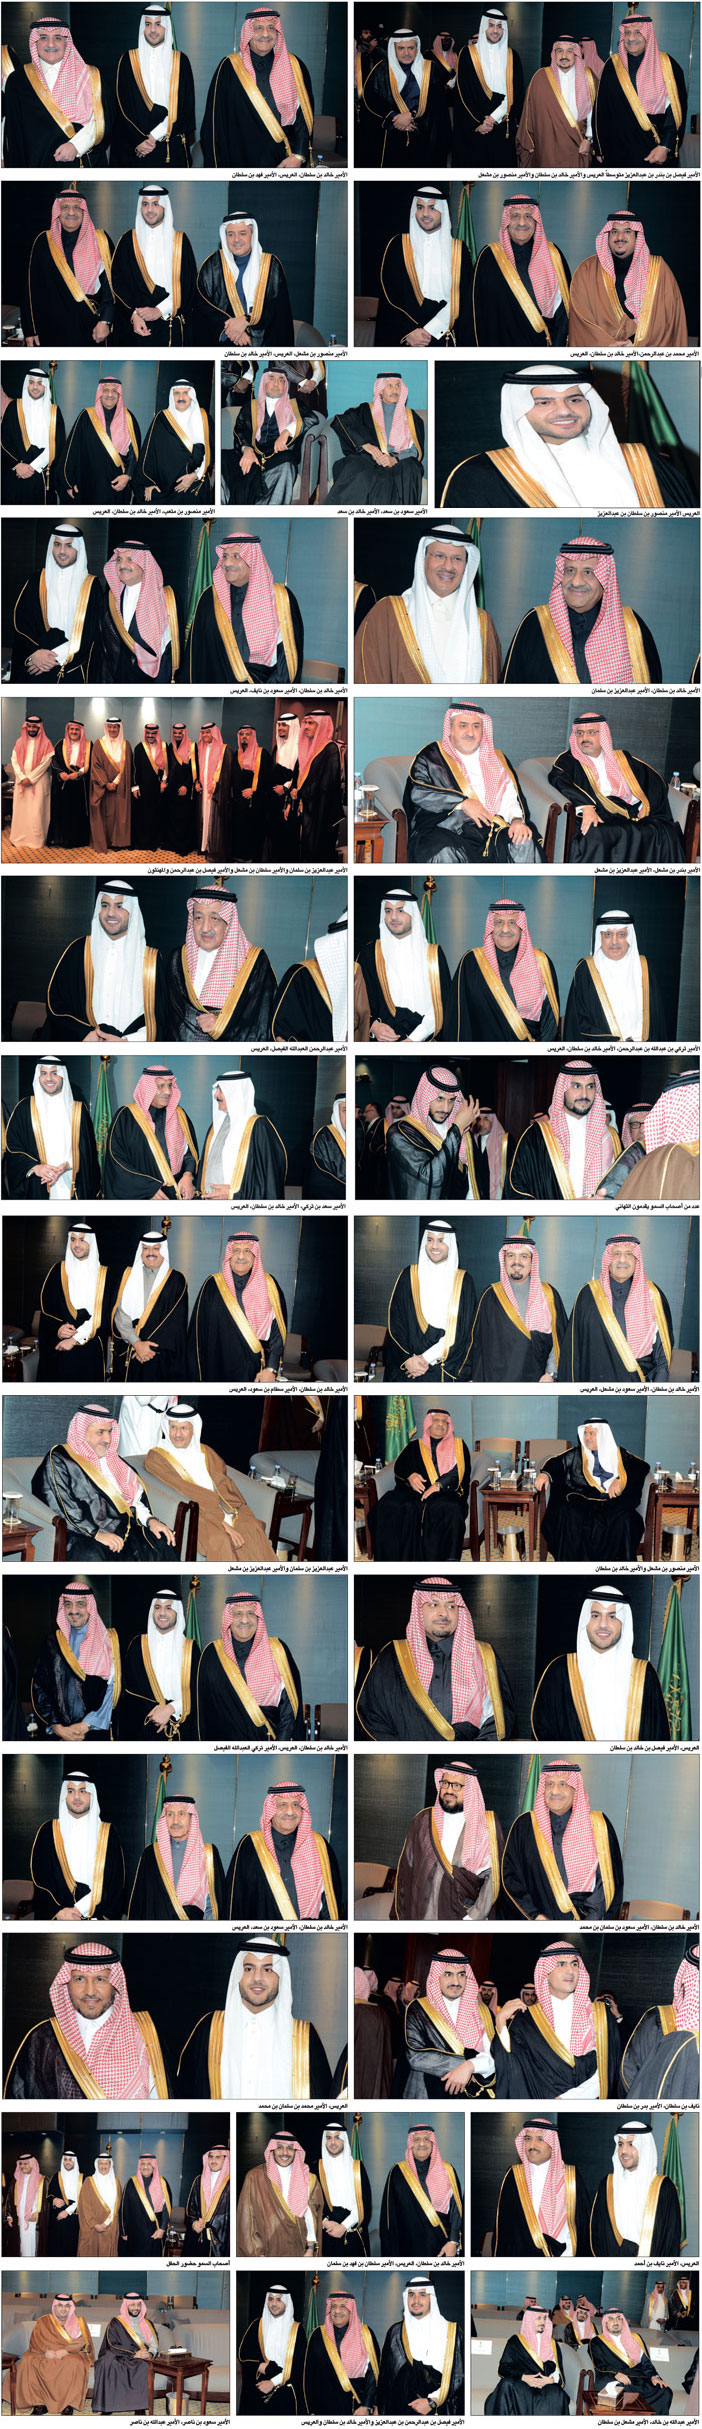 الأمير منصور بن سلطان يحتفل بزواجه من كريمة الأمير مشعل بن عبدالعزيز 